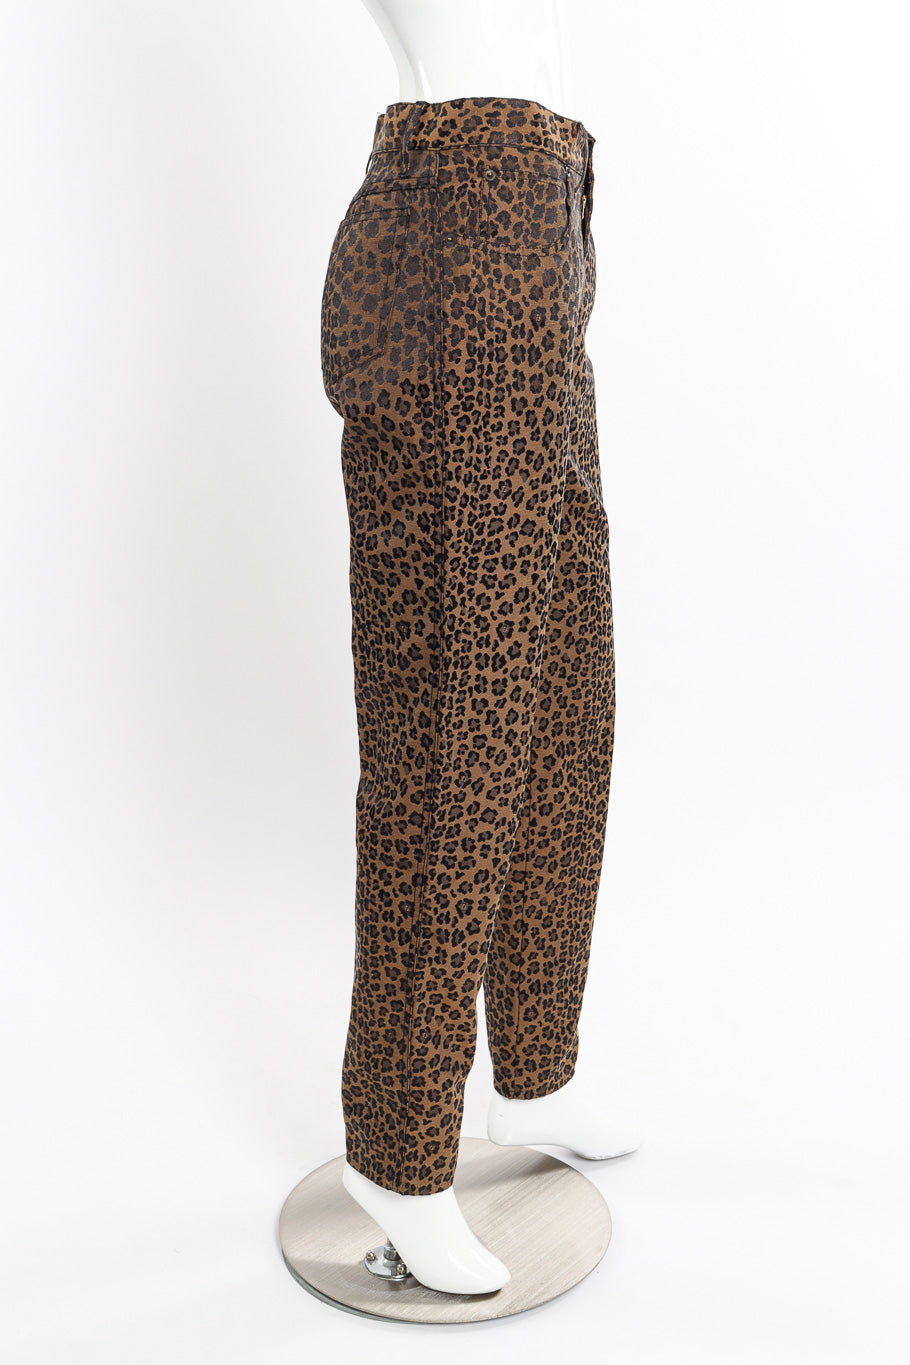 Twill Leopard Jean by Fendi on mannequin side @recessla